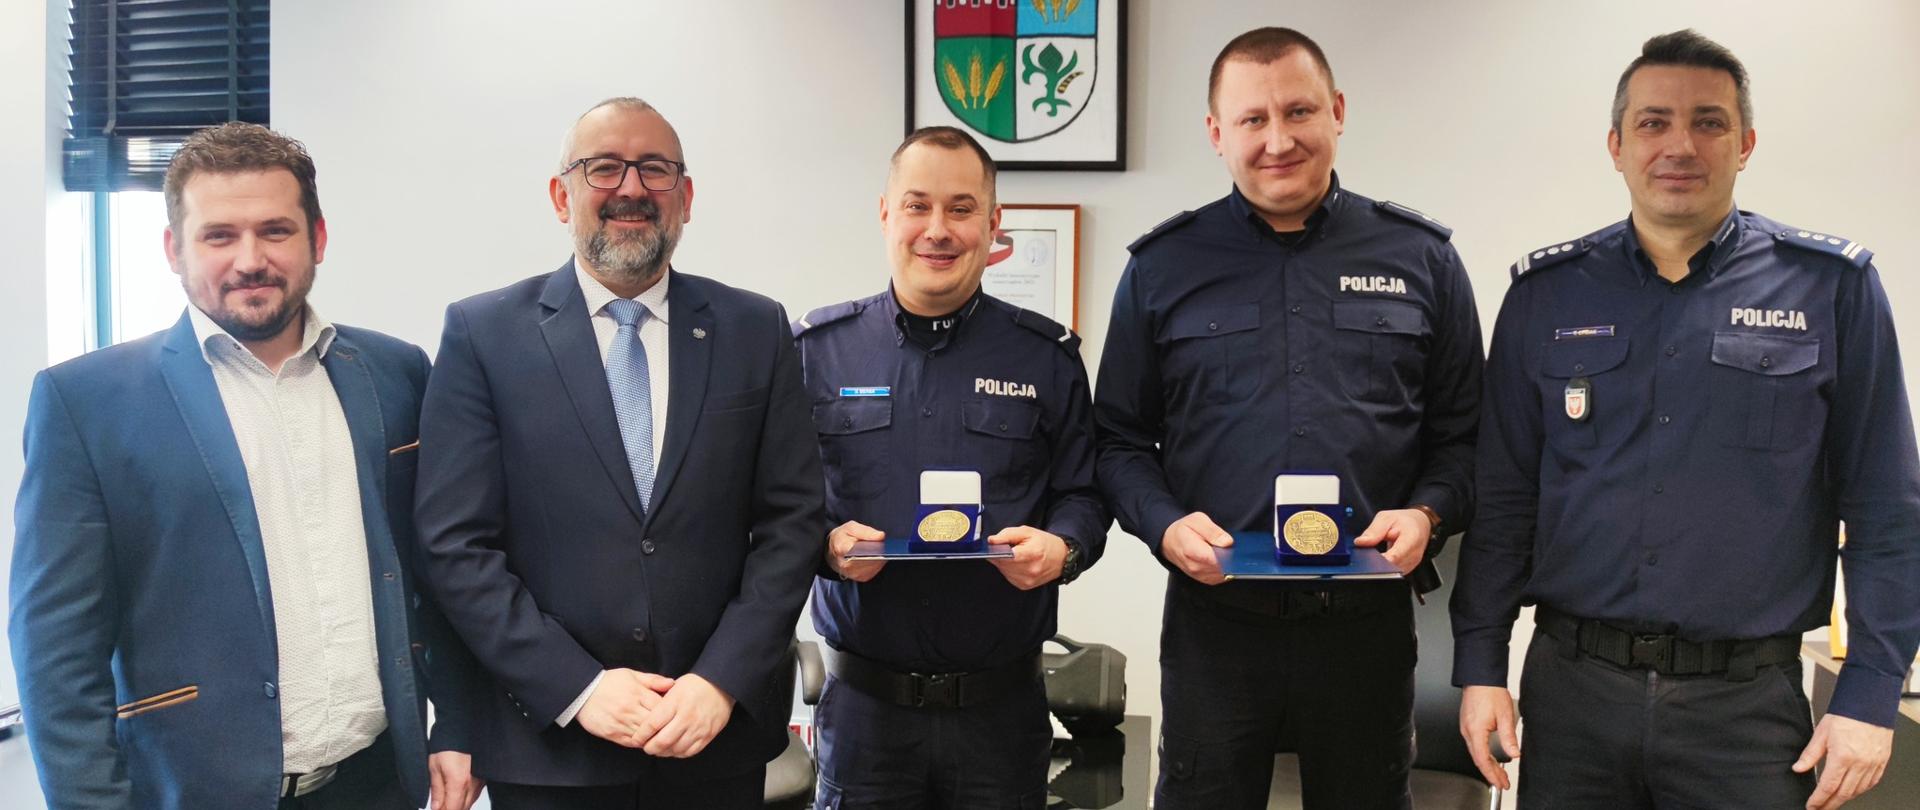 Policjanci: sierż. Damian Bieniek i mł. asp. Kamil Gadomski odznaczeni medalami "Gloria Prasnensis Terrae"